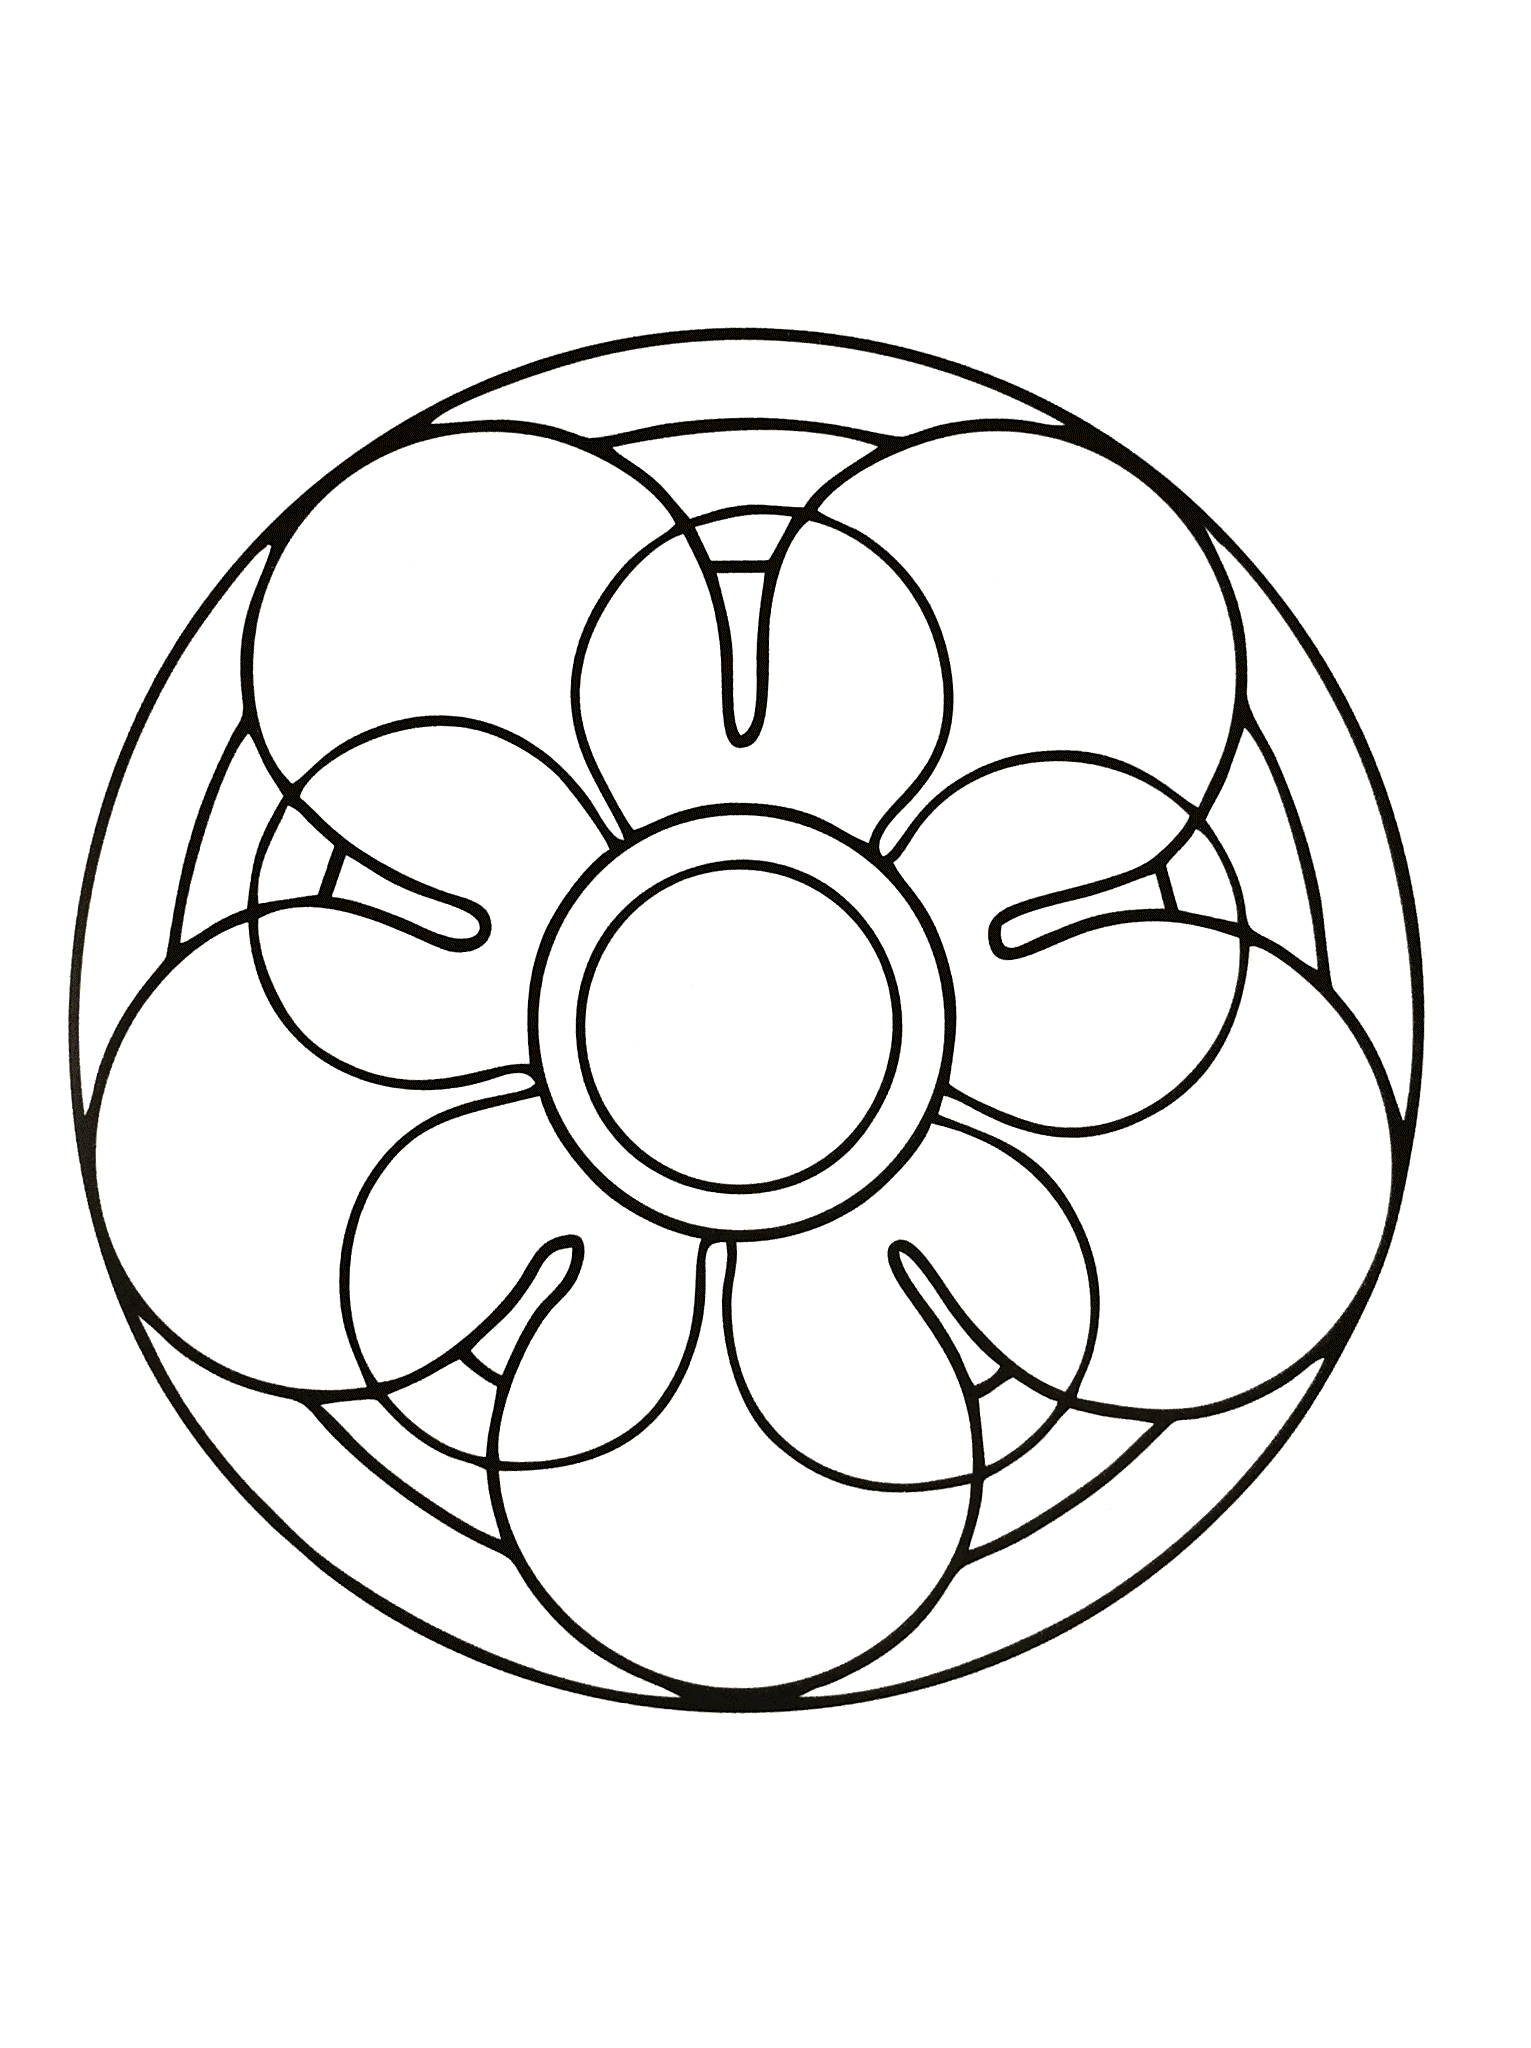 Mandala à colorier représentant une fleur ainsi qu'un cercle au centre. Très facile à colorier.